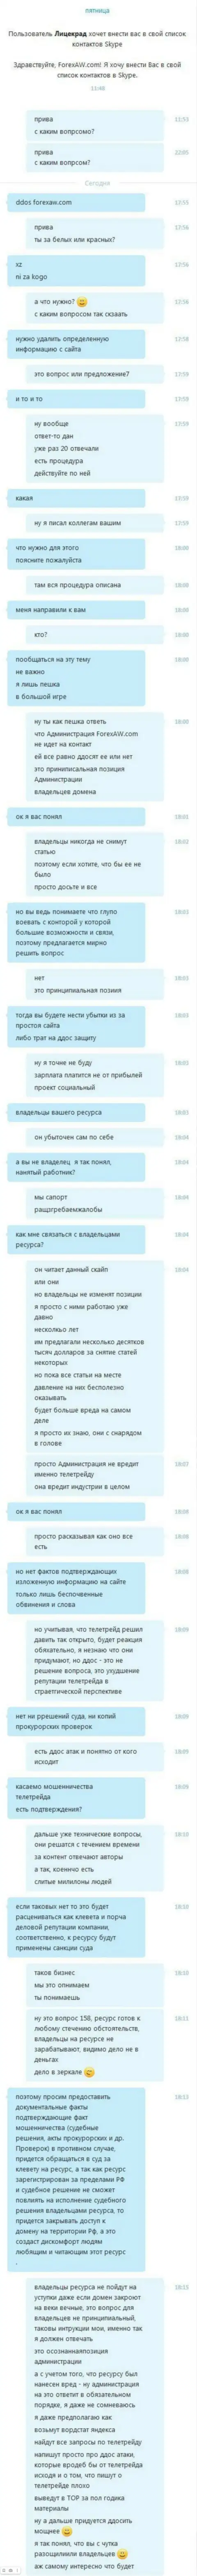 Переписка с неким представителем мошенников TeleTrade Ru, который требует удалить материал